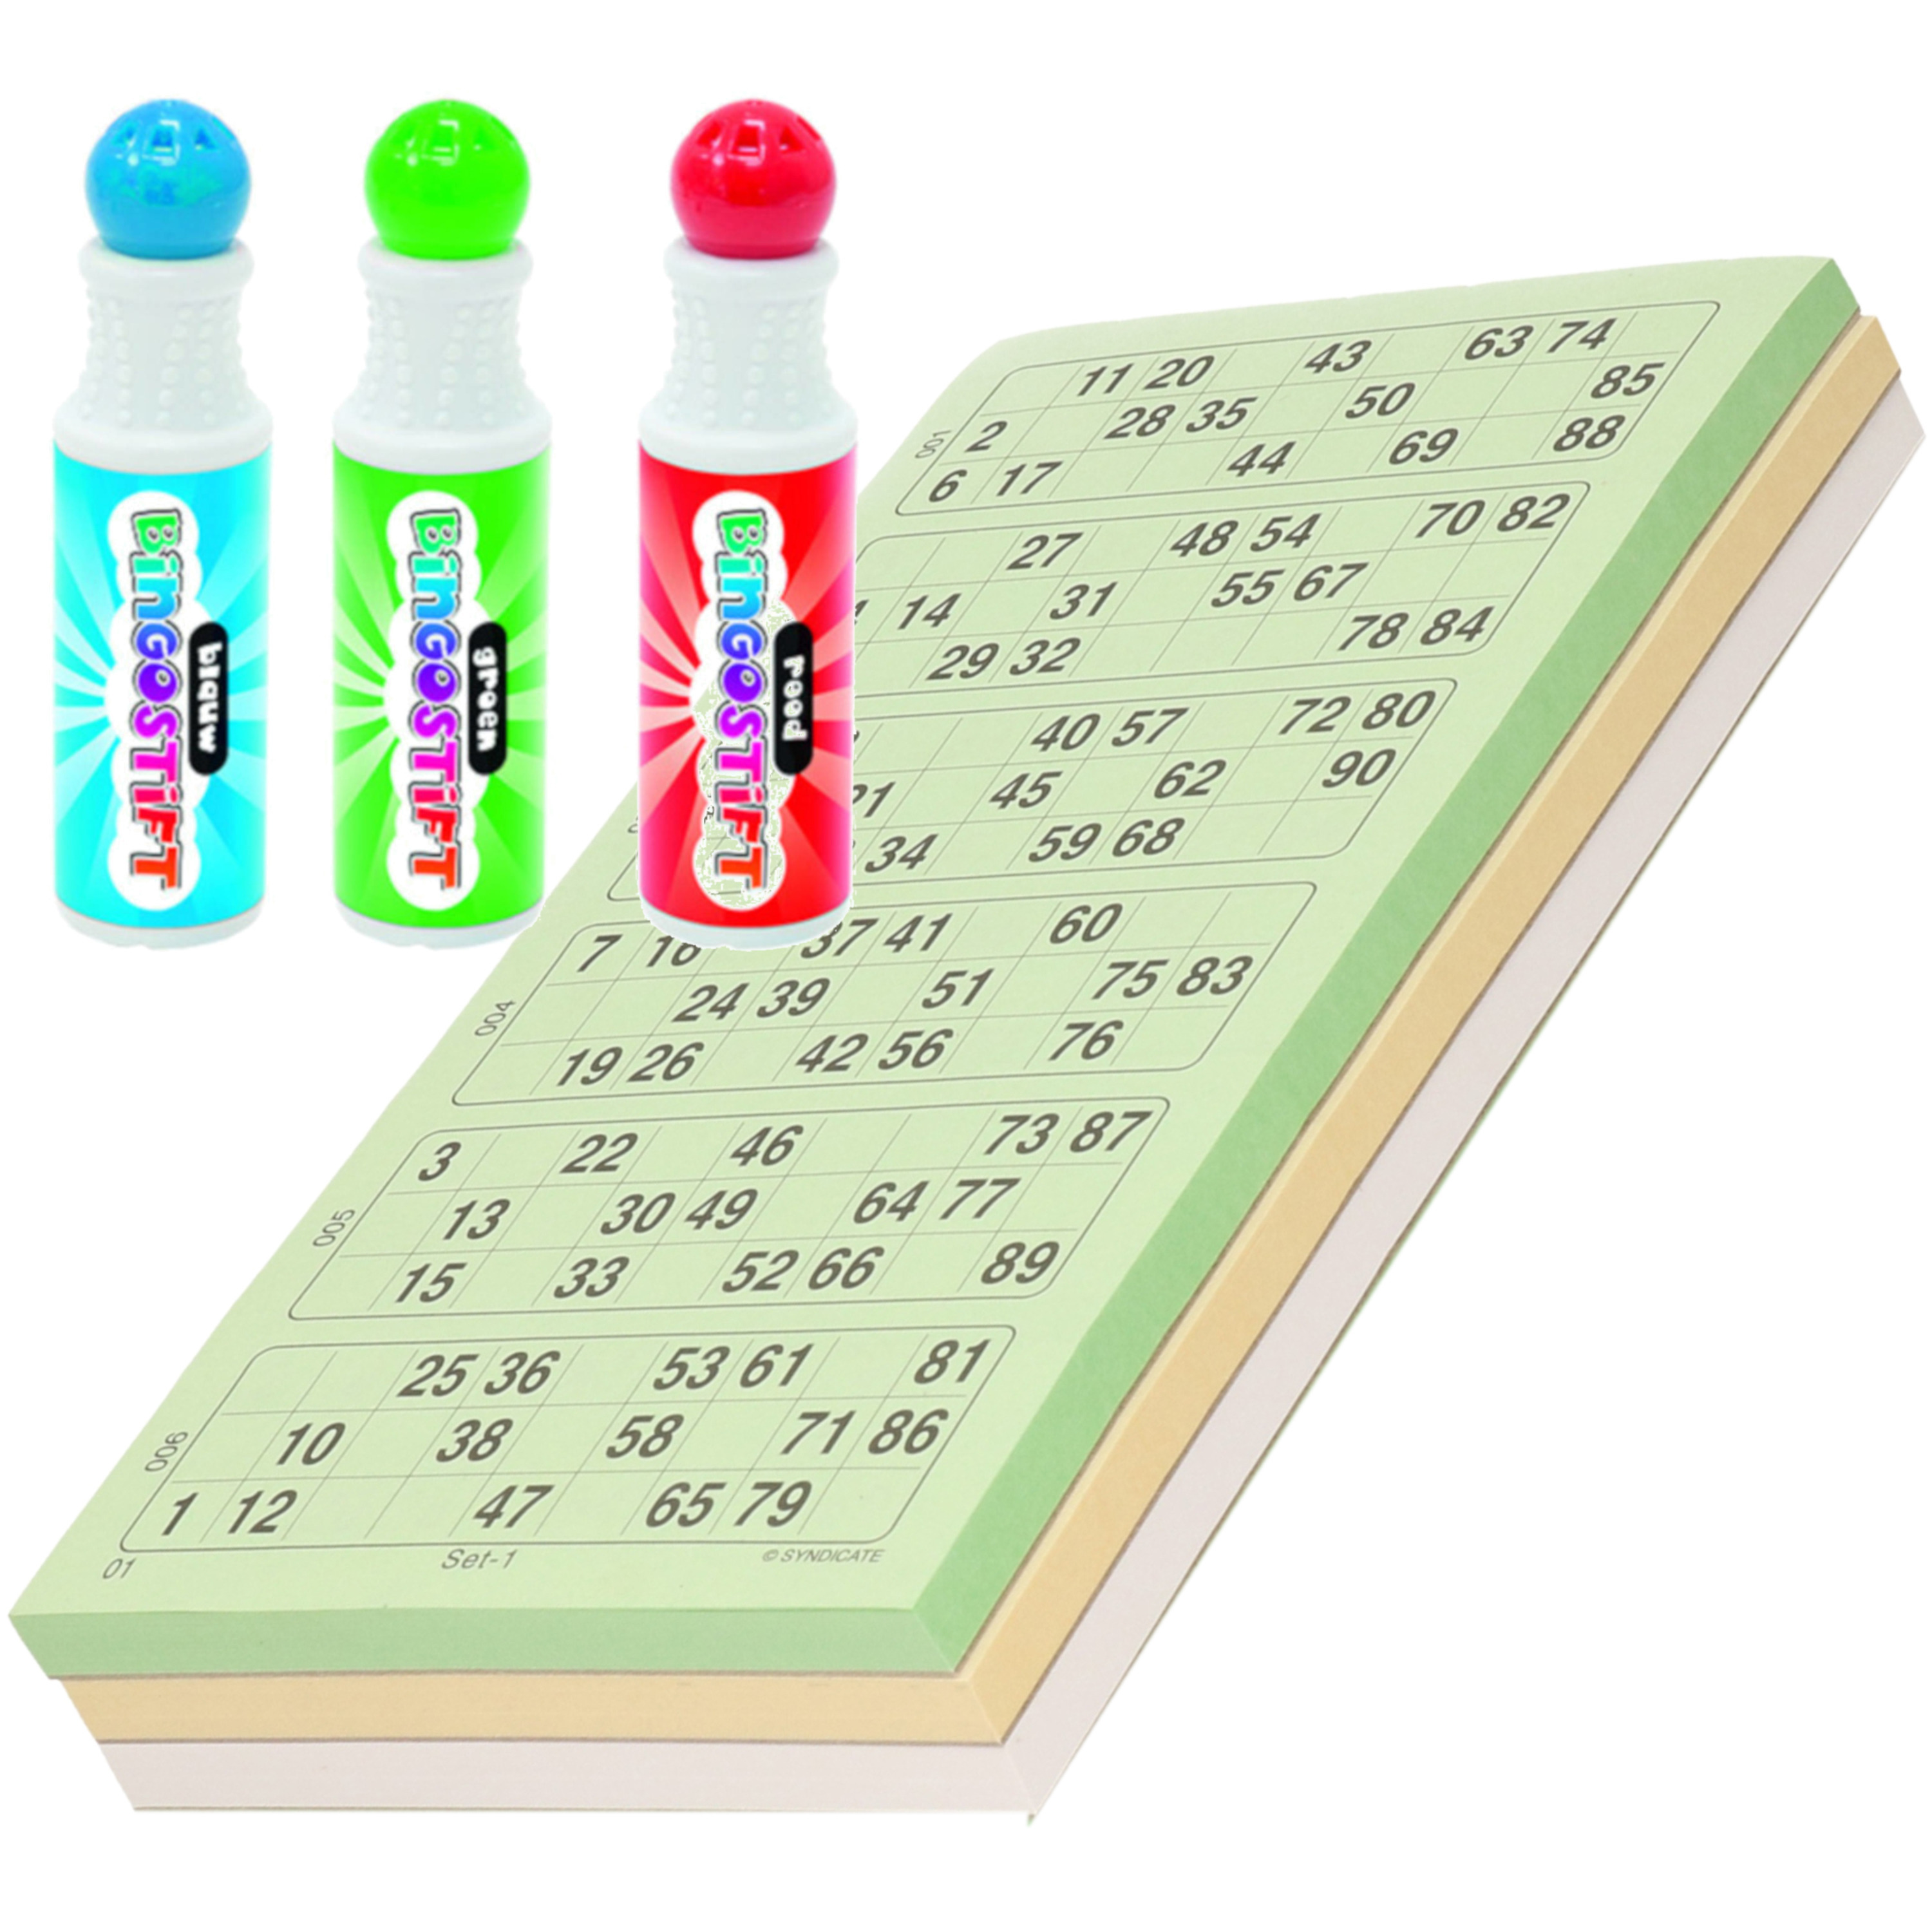 Consulaat China overdracht 100x Bingokaarten nummers 1-90 inclusief 3x bingostiften bestellen? |  Shoppartners.nl